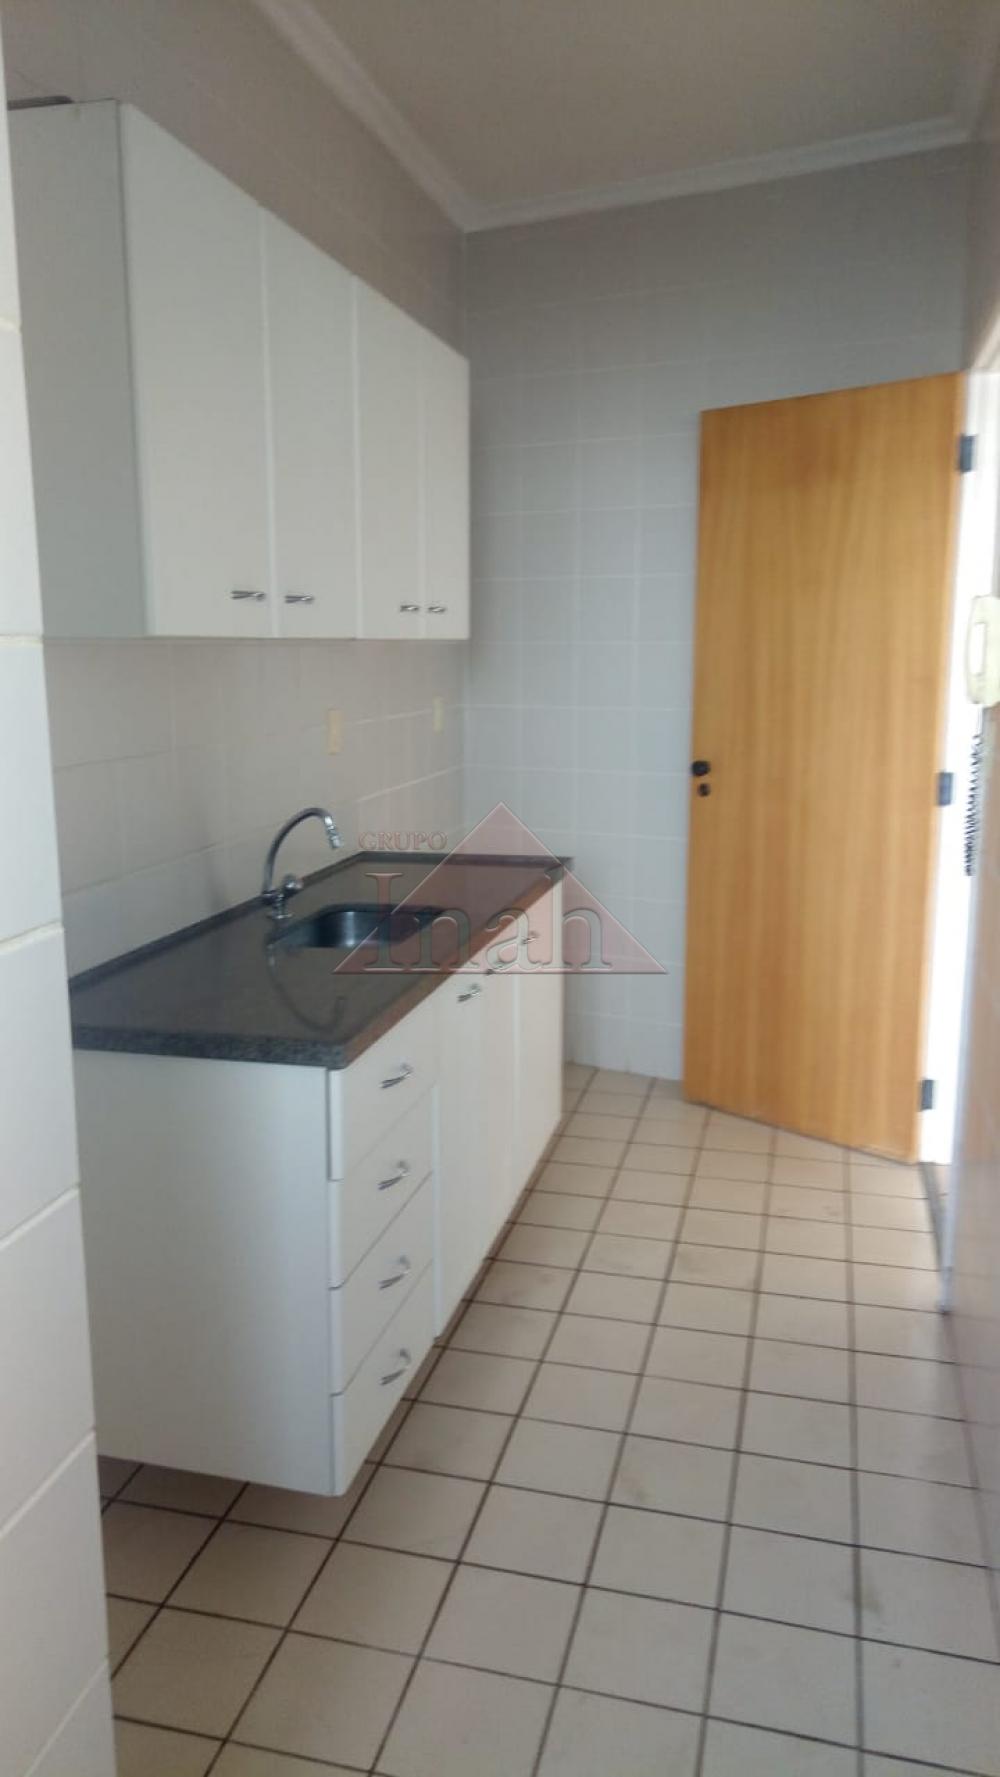 Alugar Apartamentos / Apartamento em Ribeirão Preto R$ 900,00 - Foto 1